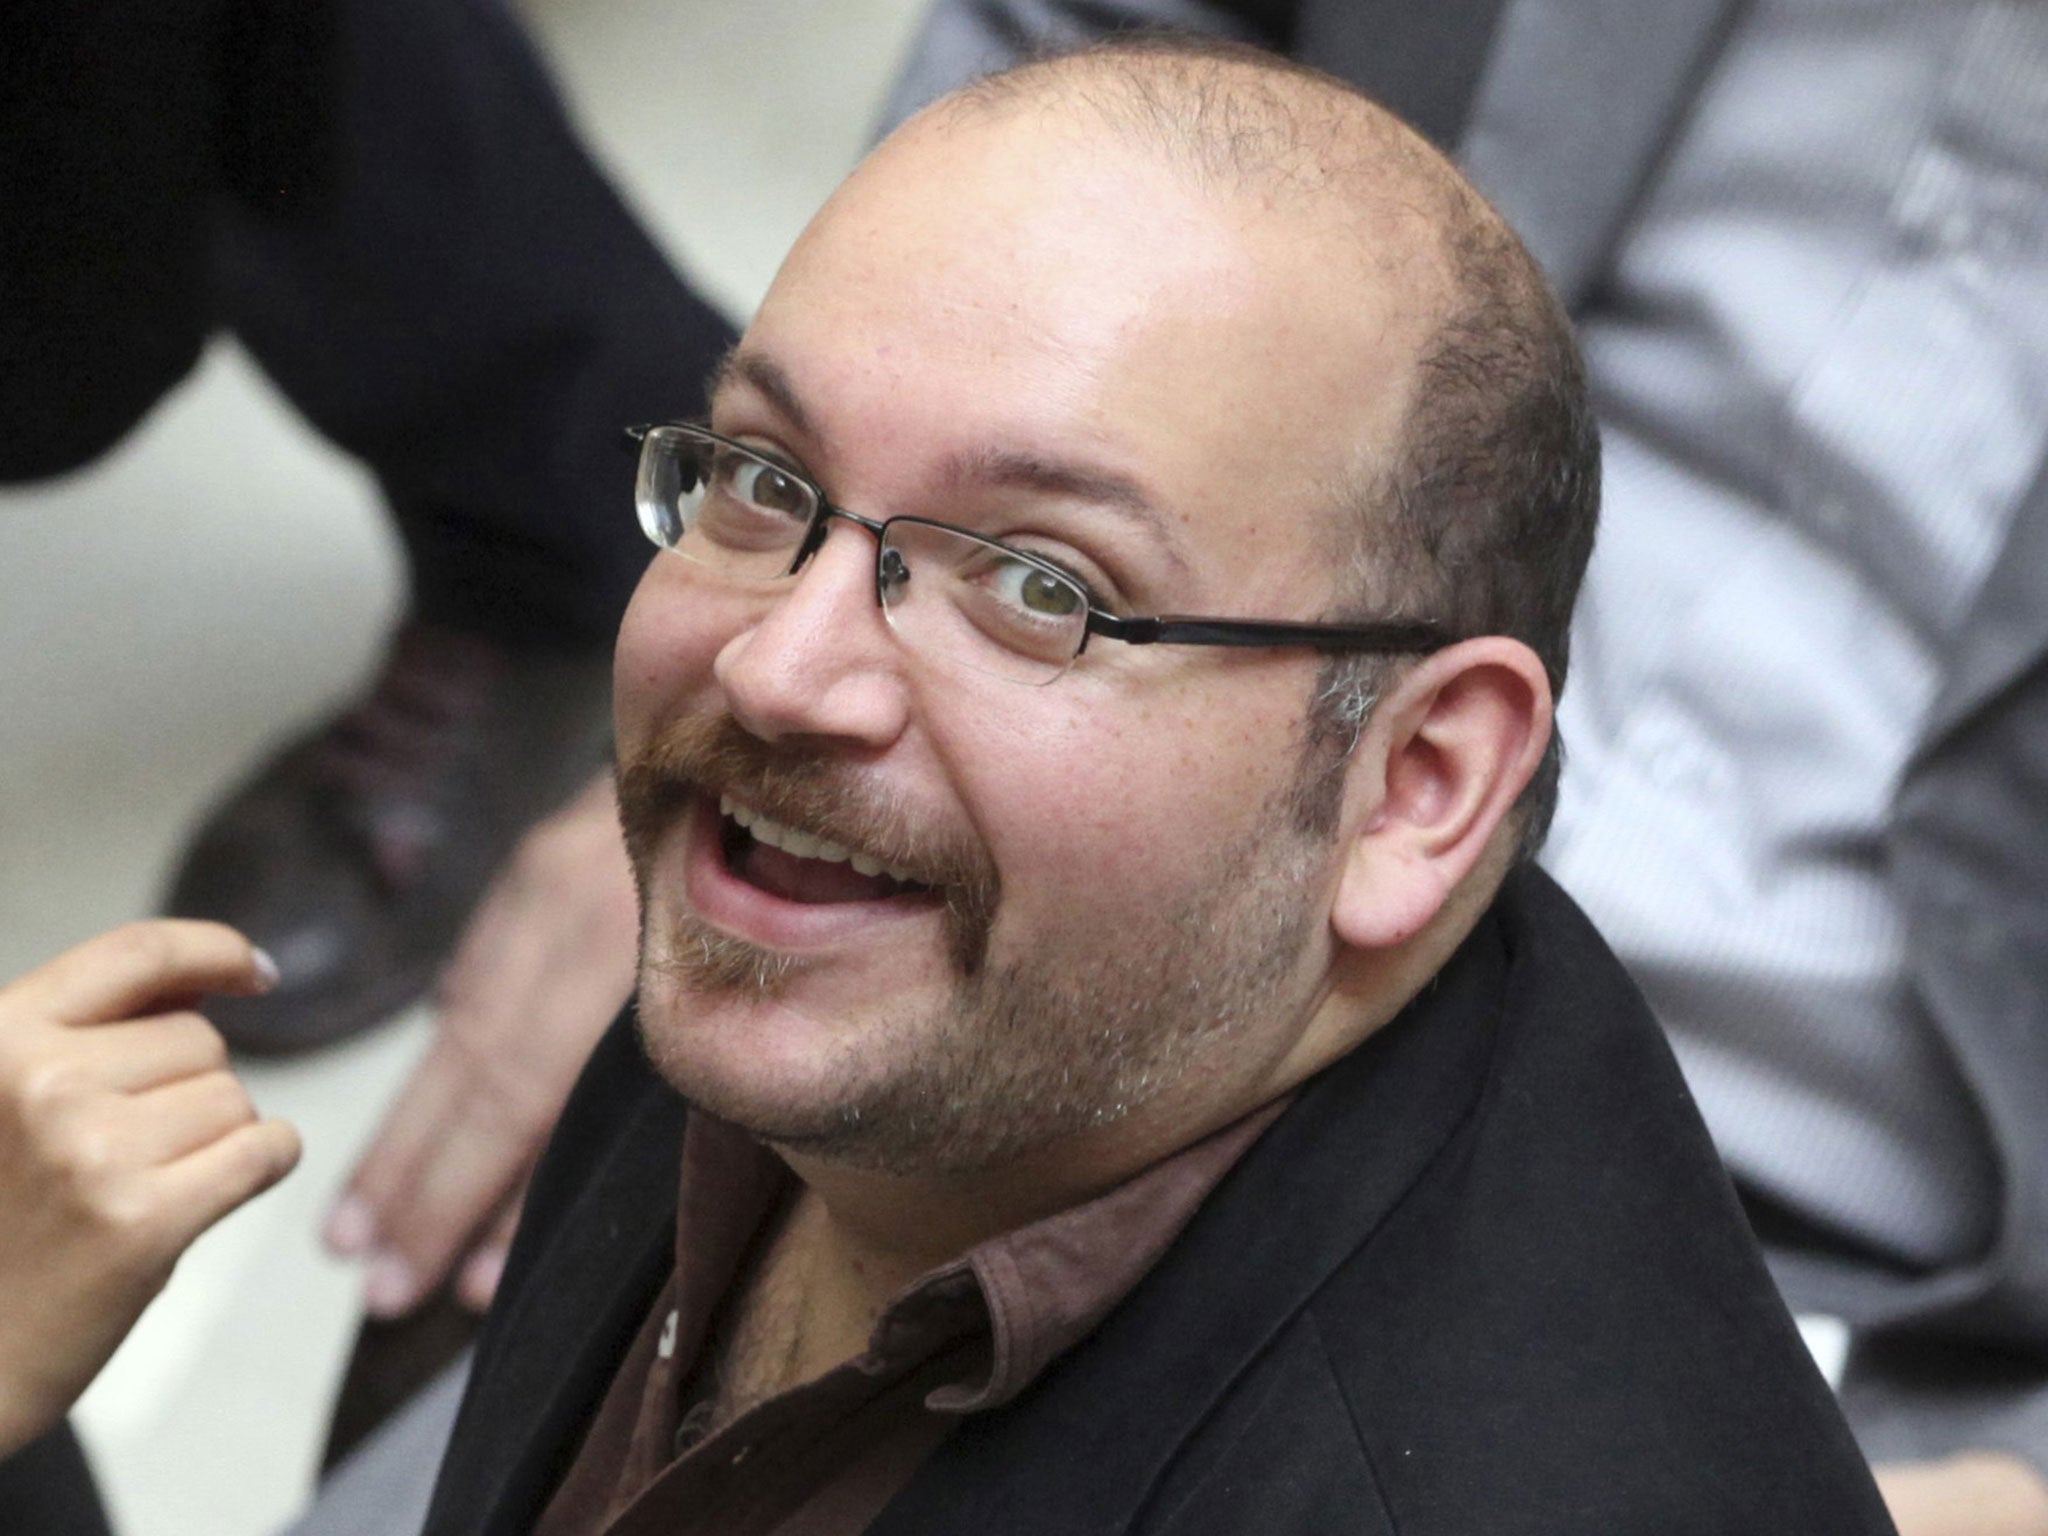 Jason Rezaian is the Tehran correspondent of The Washington Post